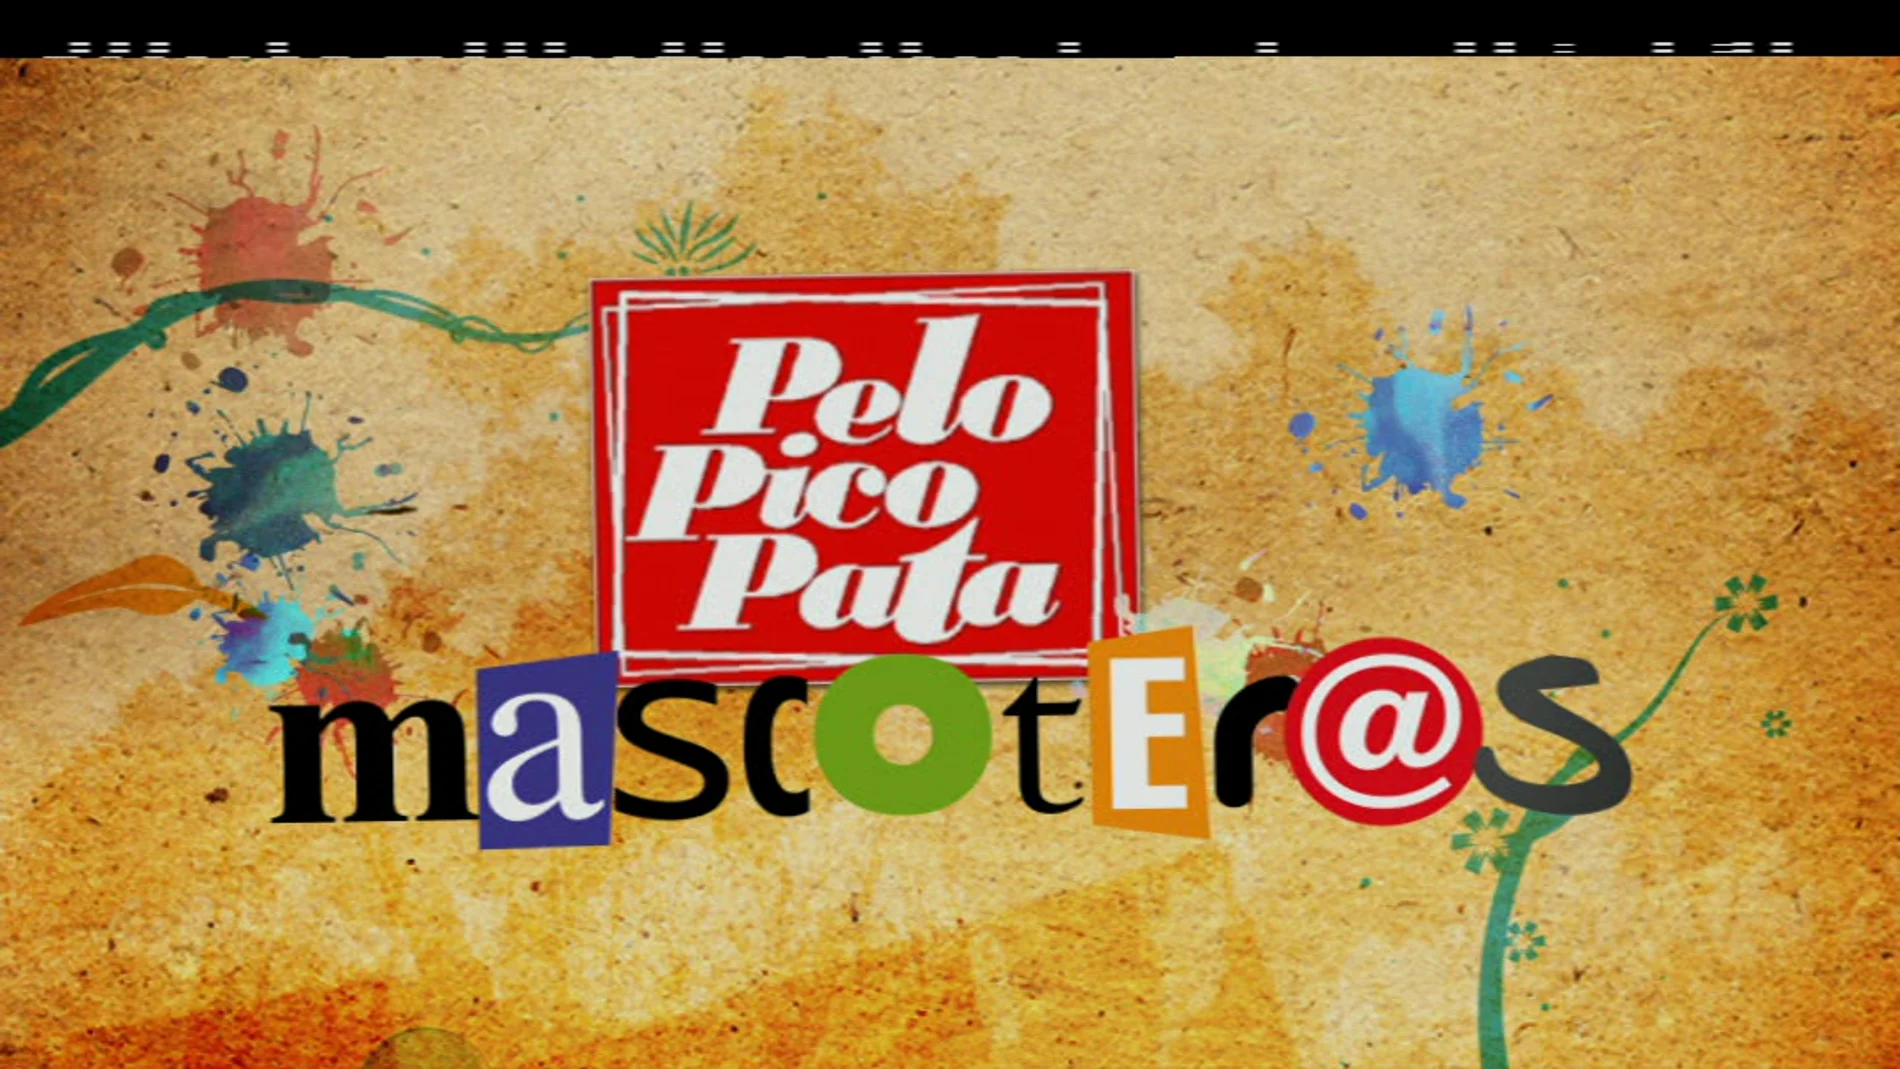 PeloPicoPata -Edición Mascoteros-